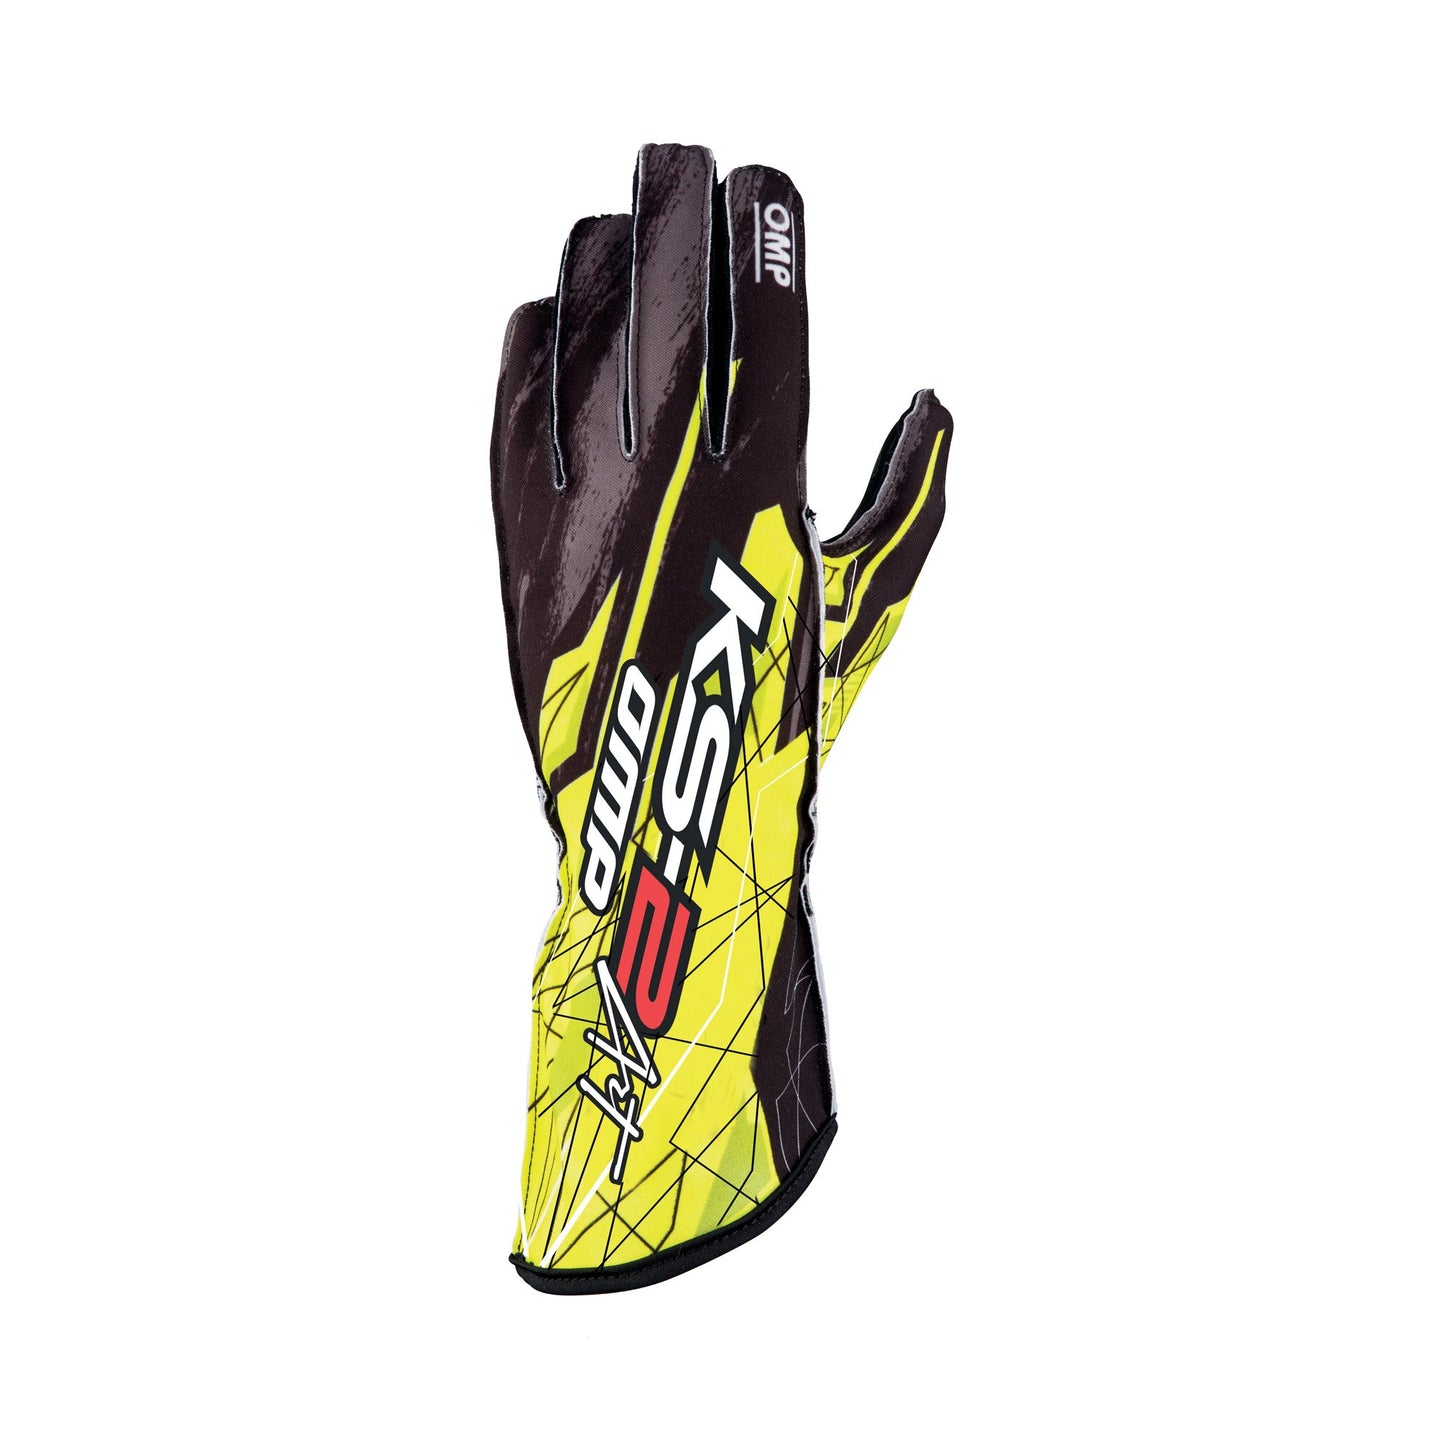 OMP Racing KS-2 Art Karting Gloves